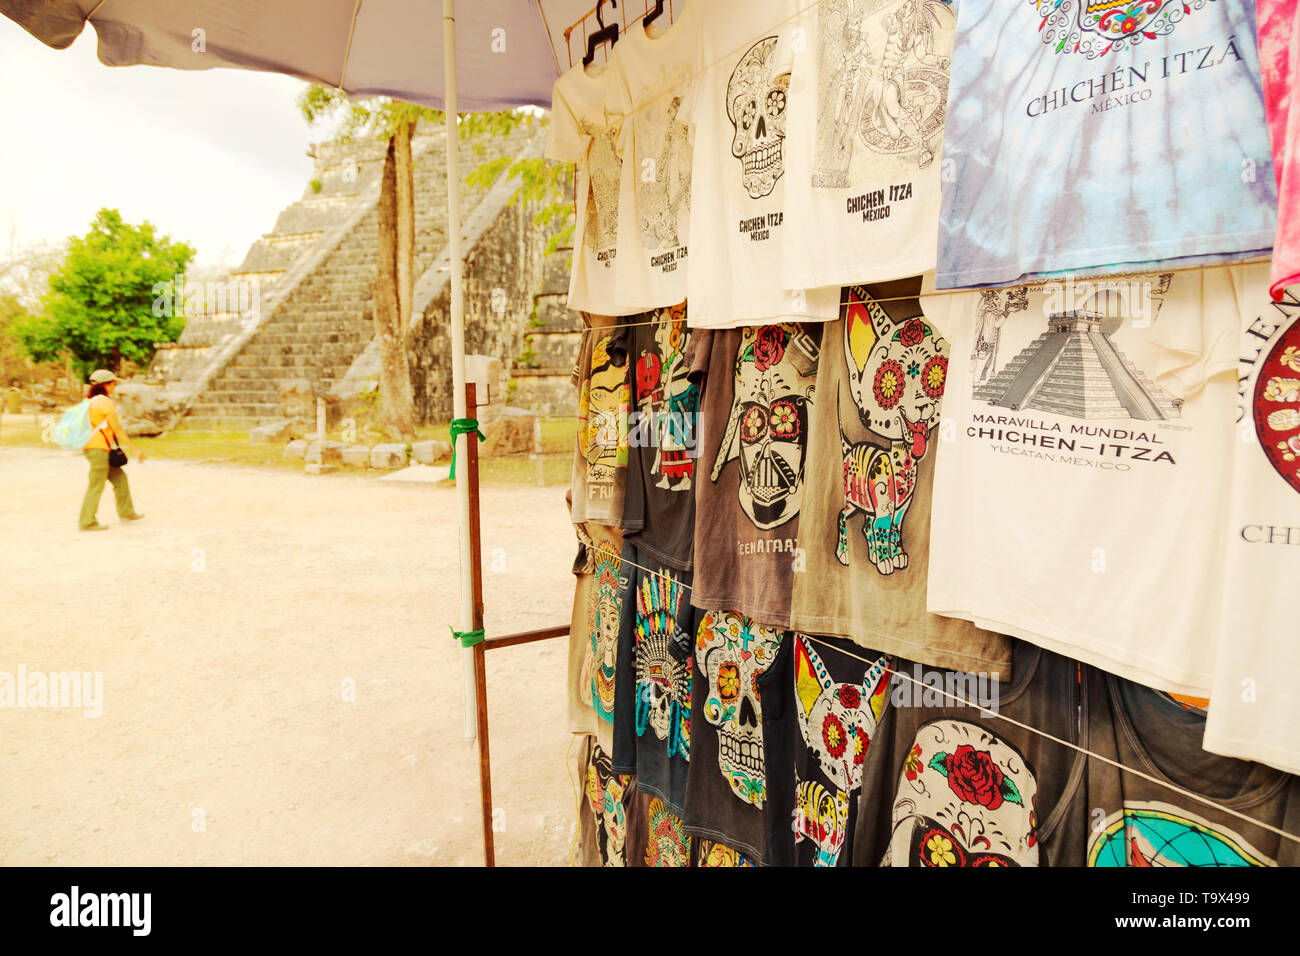 Latin America tourism - tourist stall at Chichen Itza selling souvenirs for tourists, Chichen Itza, Yucatan, Mexico Latin America Stock Photo